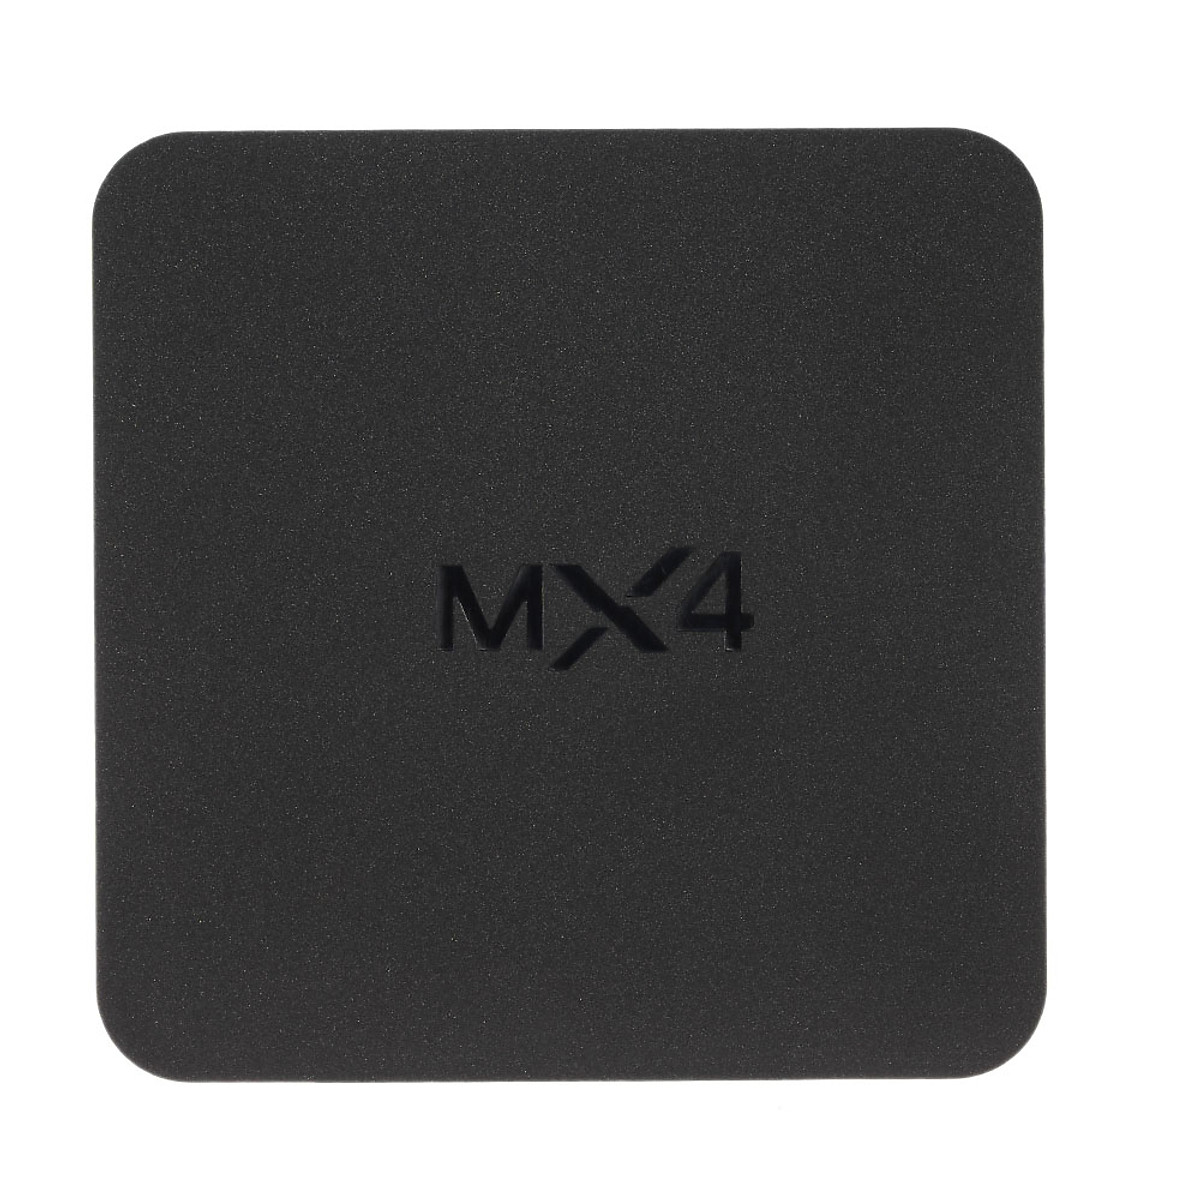 TV Box MX4 thông minh Android 6.0 Quad-core 1G / 8G DLNA UHD 4K 3D H.265 WiFi HD có remote đi kèm